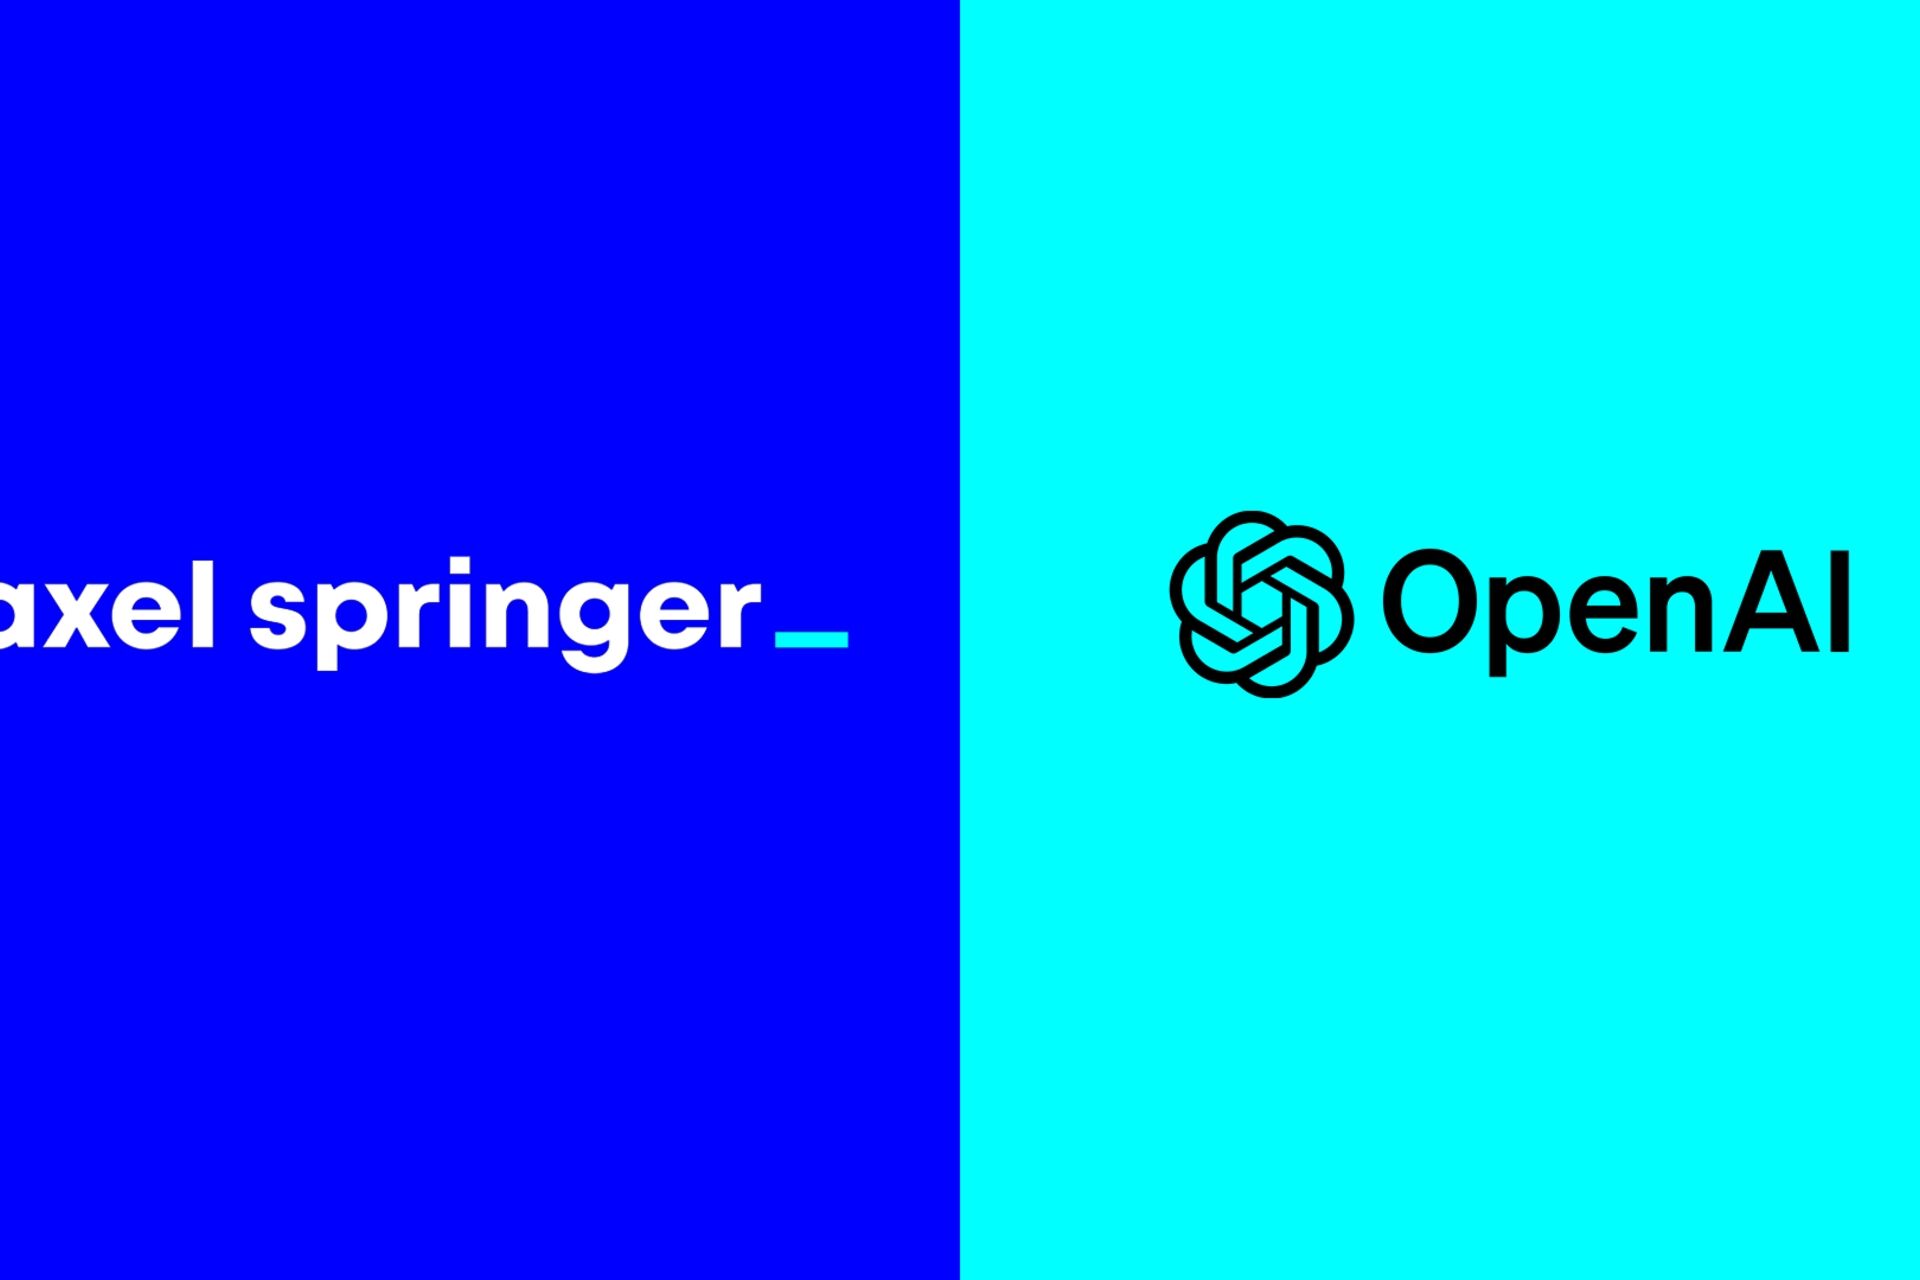 Báo chí: Axel Springer và OpenAI công bố quan hệ đối tác toàn cầu nhằm tăng cường báo chí độc lập trong thời đại trí tuệ nhân tạo